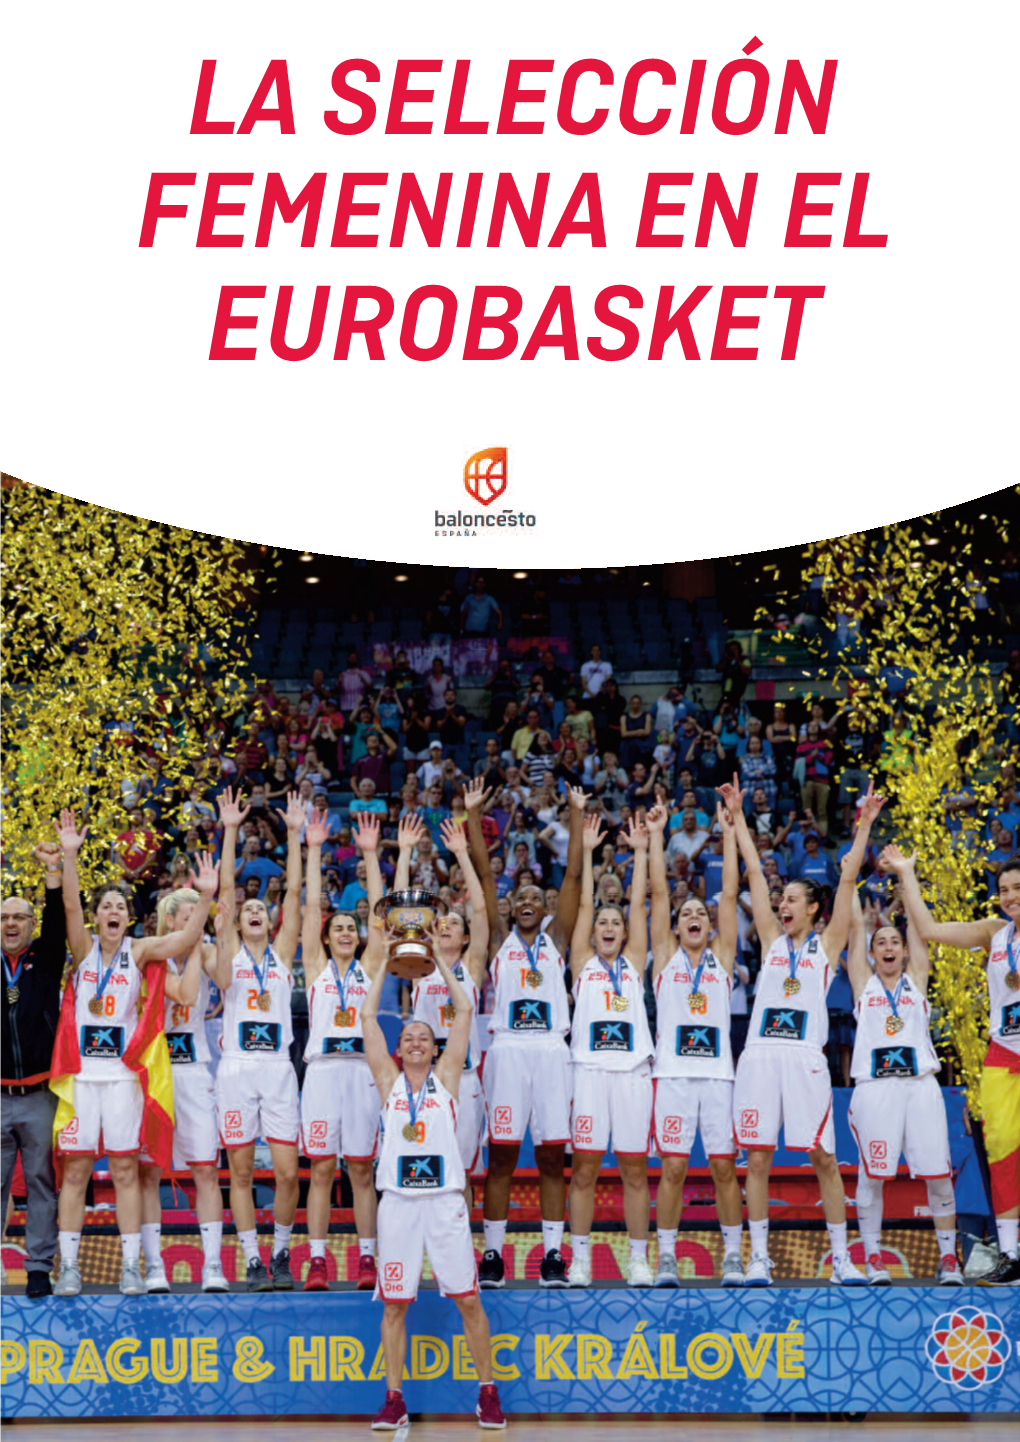 DOSSIER: La Selección Femenina En El Eurobasket